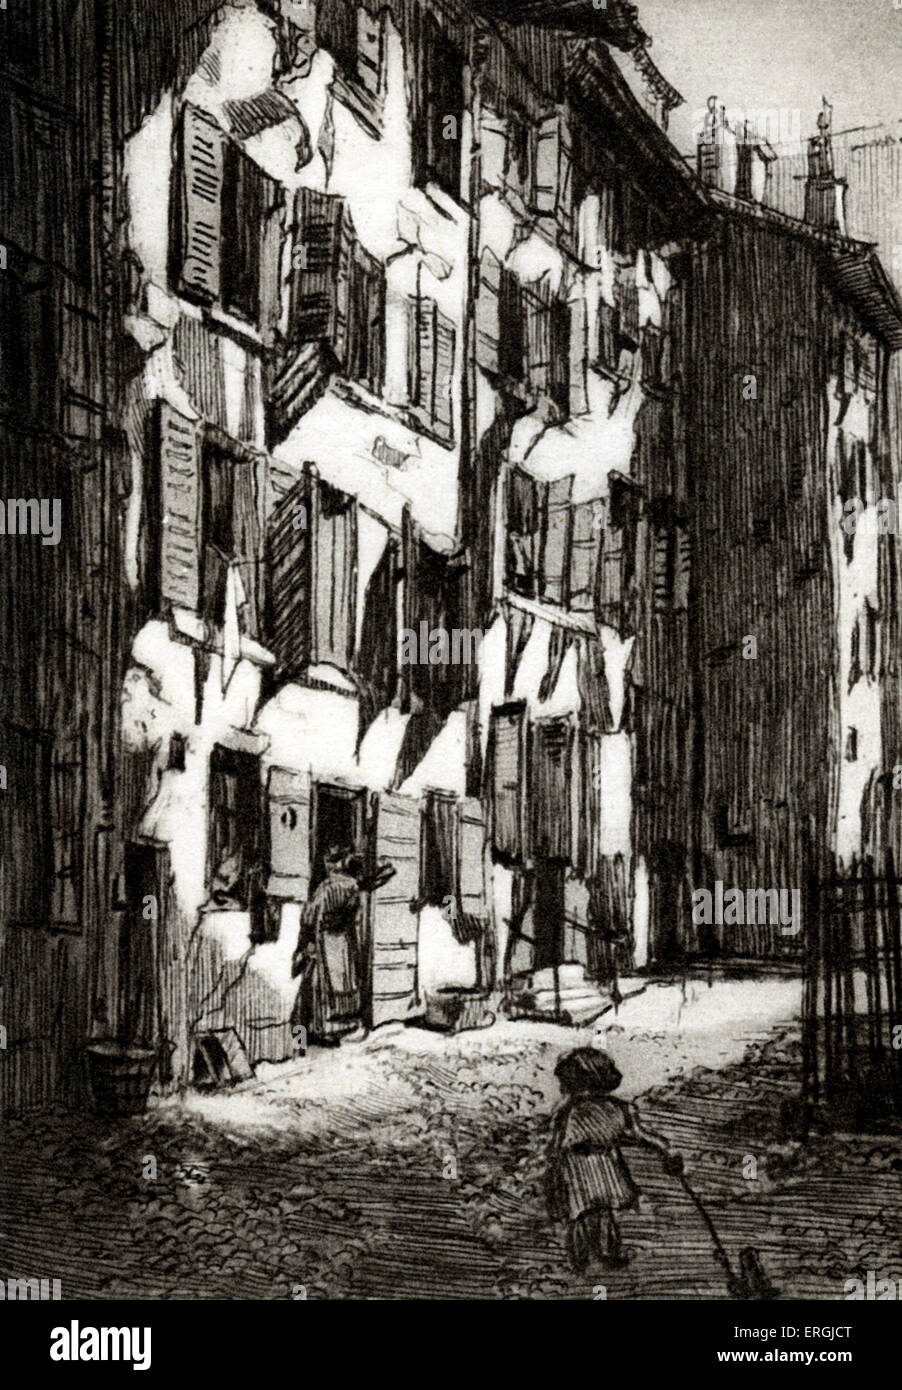 Vieux quartier de Genève. Impression monochrome de l'illustration par Verdier (dates inconnues). Banque D'Images